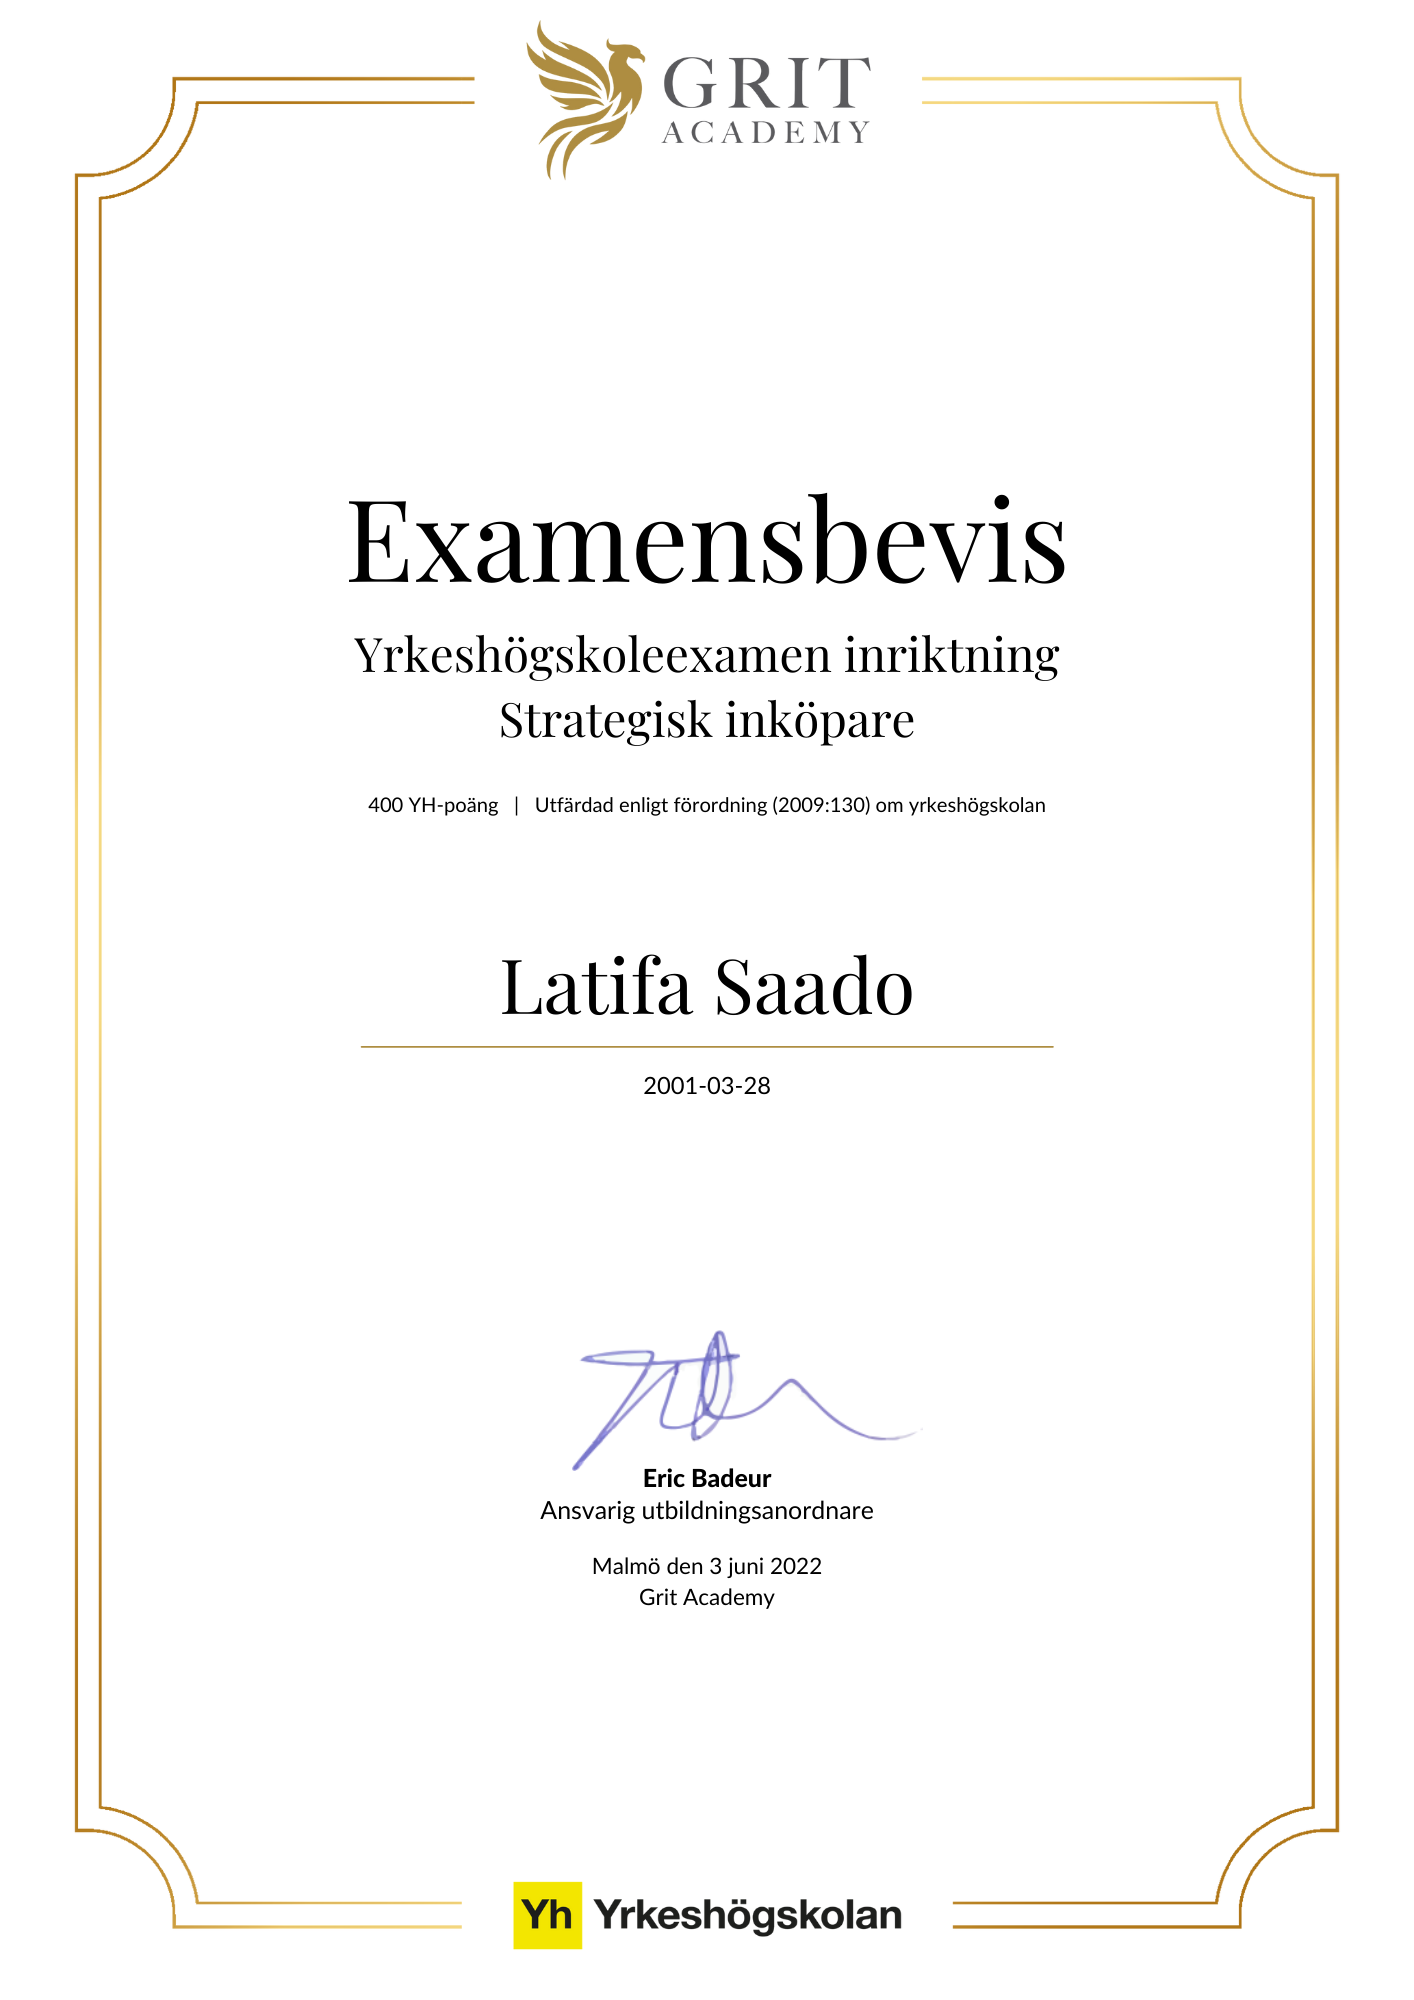 Examensbevis Latifa Saado - 1